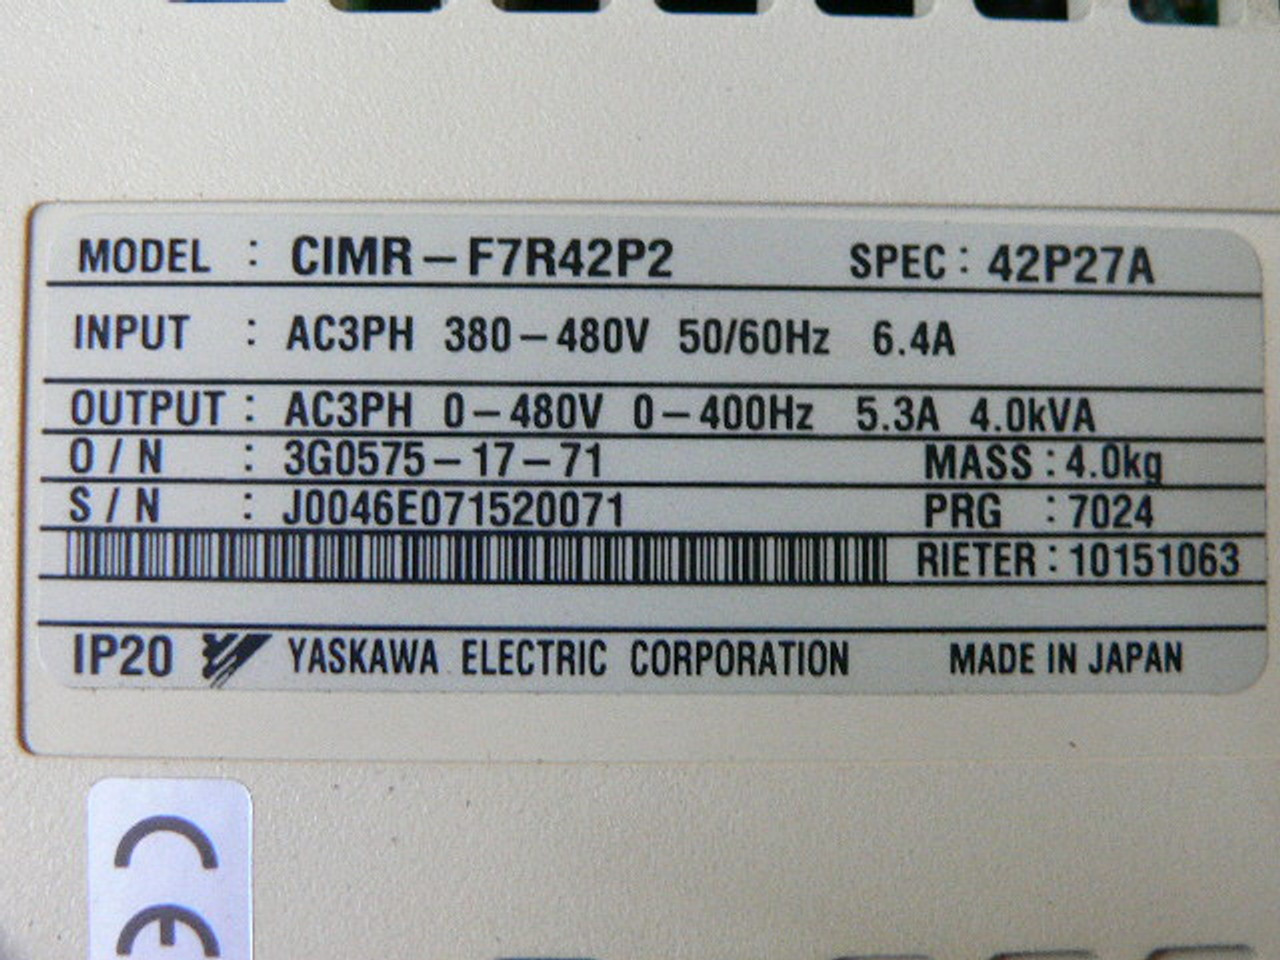 Rieter Yaskawa CIMR-F7R42P2 CIMR-F7U42P2 SPEC 42P27A VFD Fen  Industrial